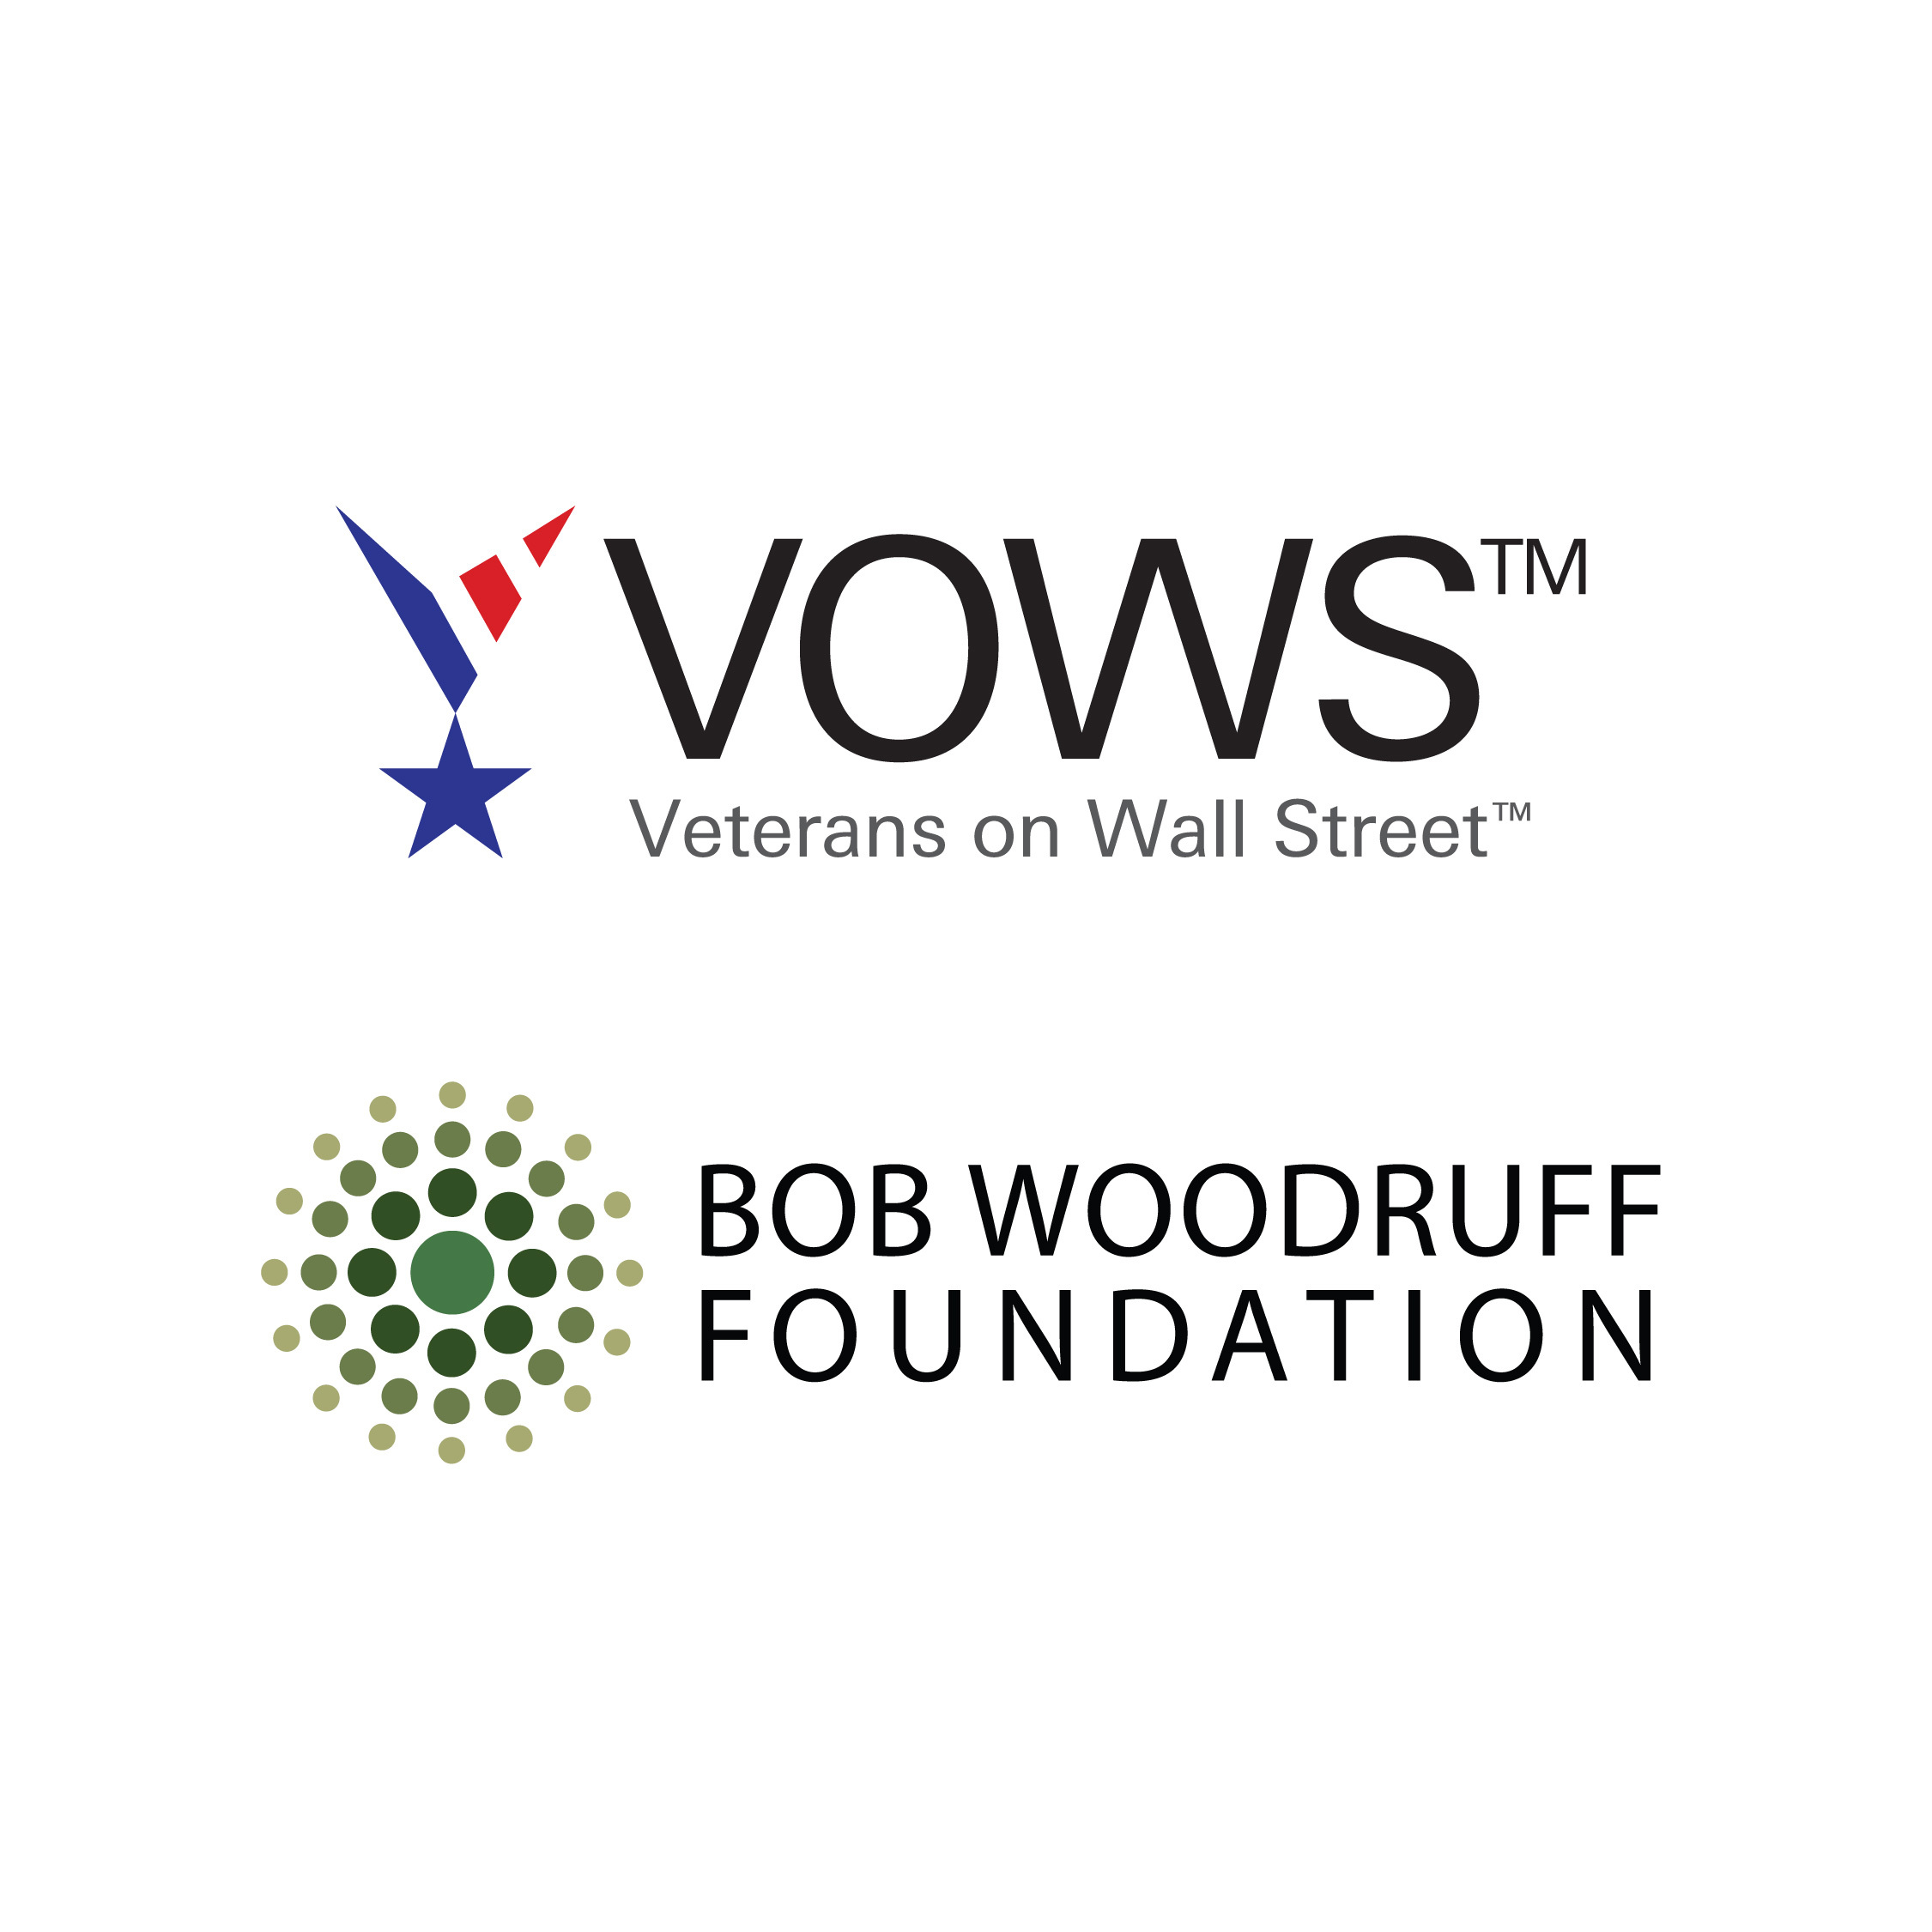 VOWS & Bob Woodruff Foundation